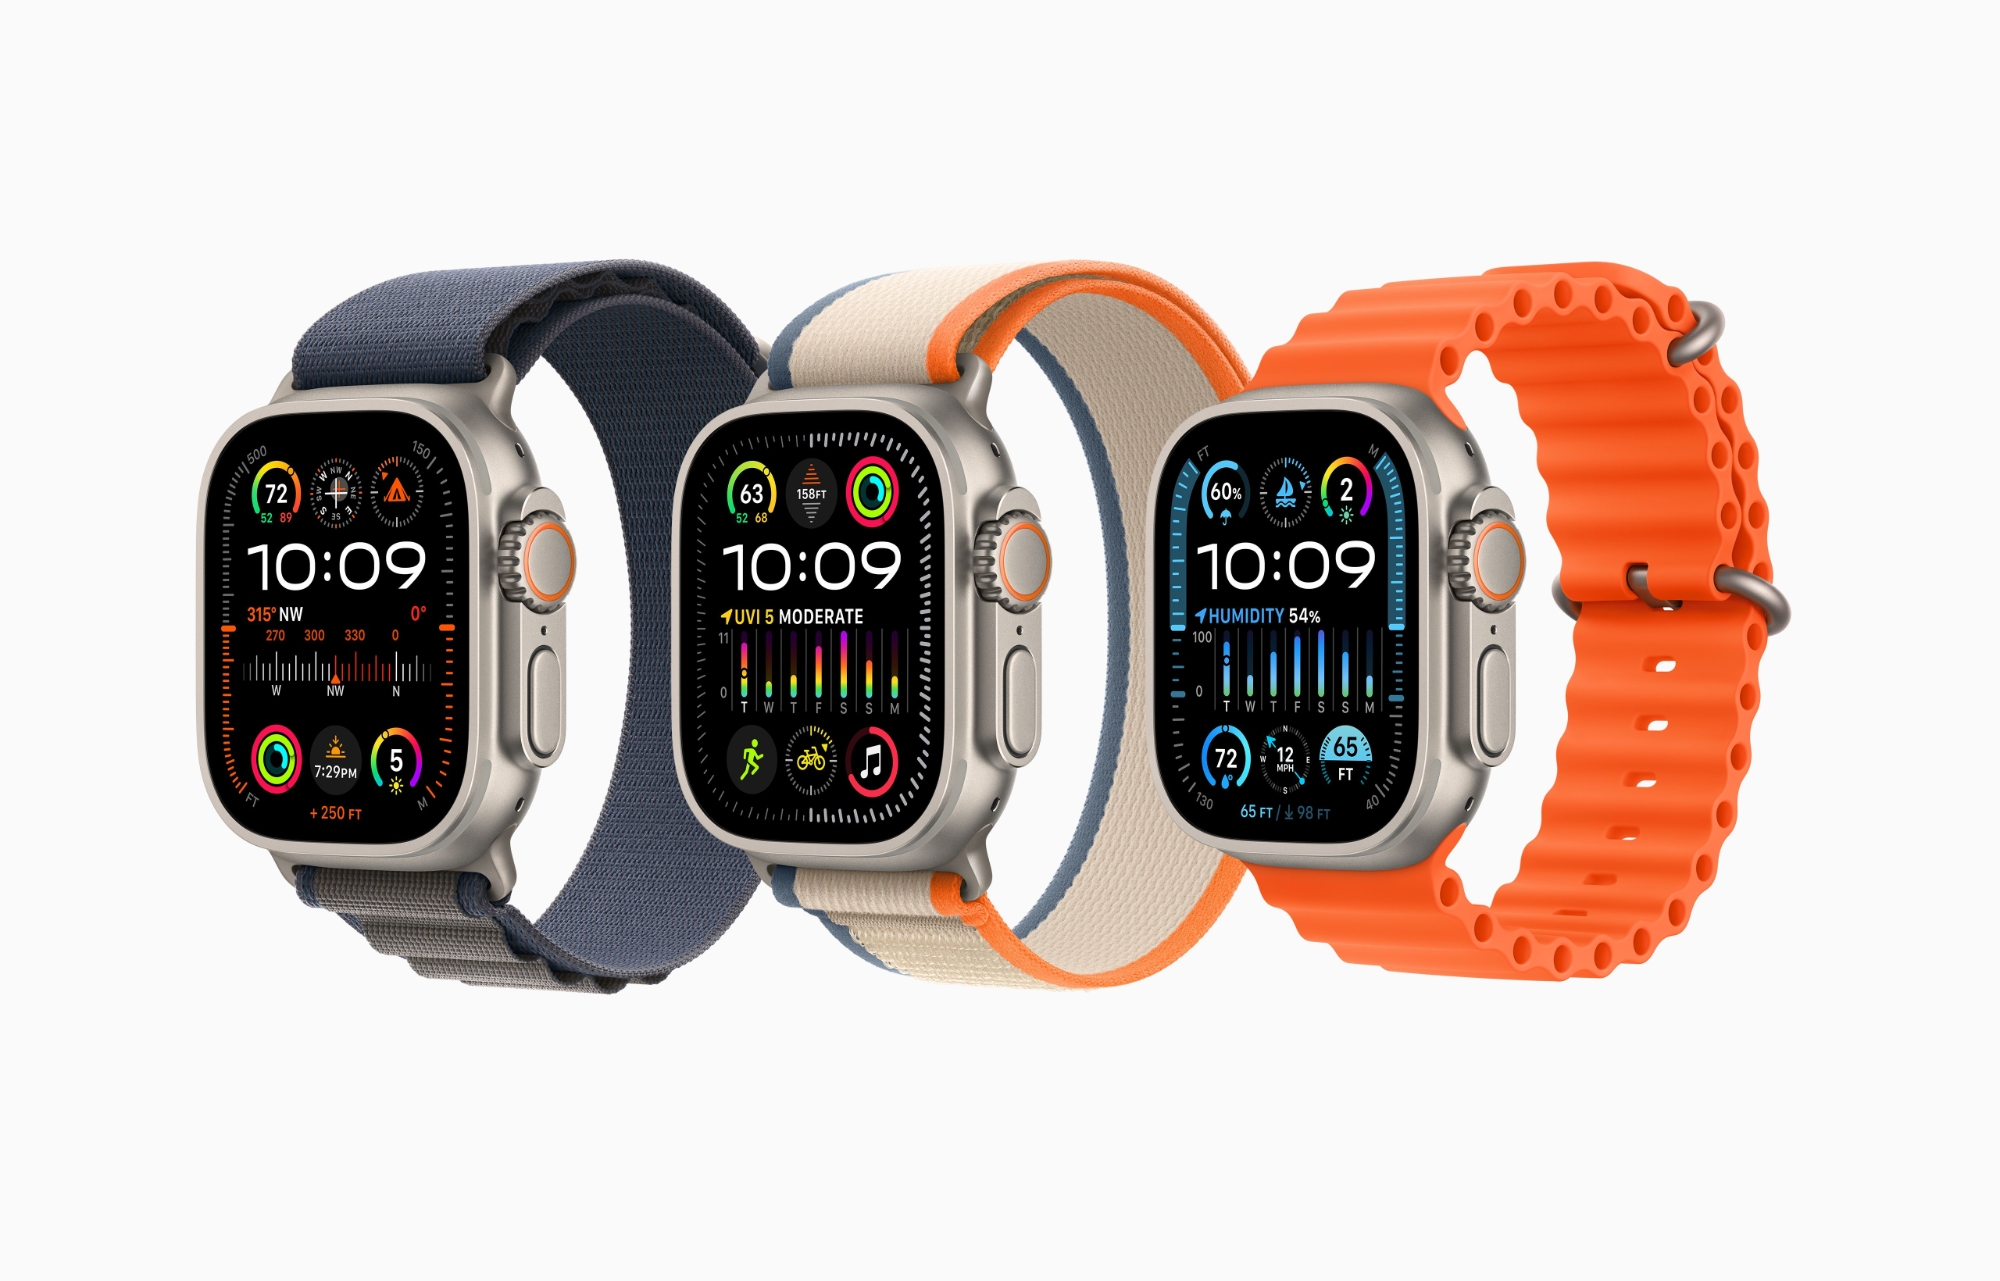 Angebot des Tages: Original Apple Watch Ultra bei Amazon für $70 Rabatt